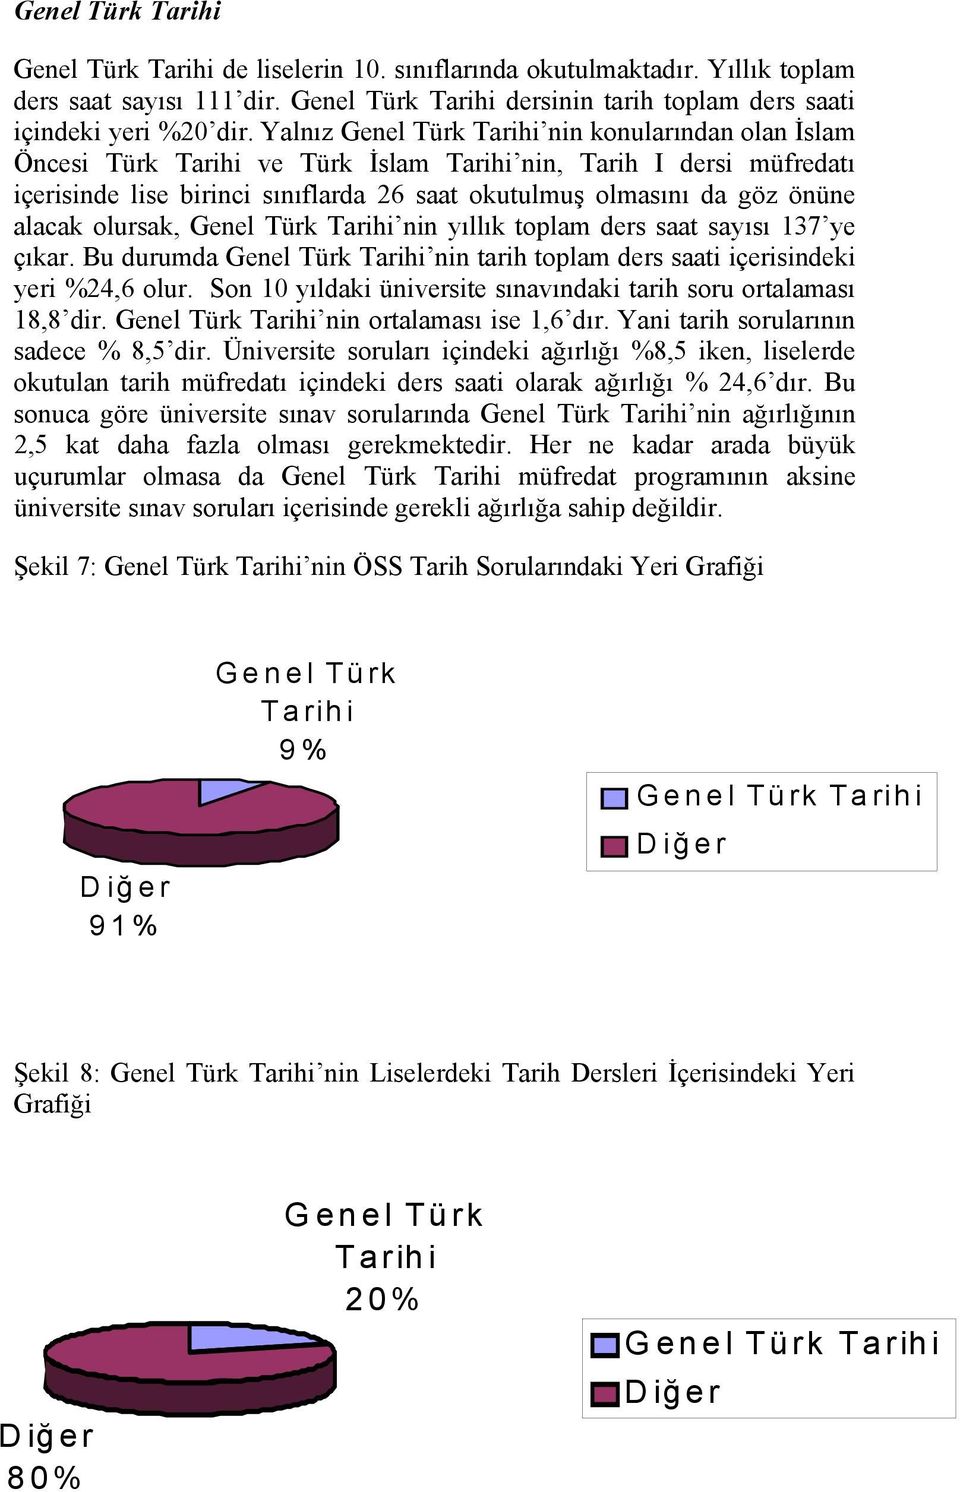 alacak olursak, Genel Türk Tarihi nin yıllık toplam ders saat sayısı 137 ye çıkar. Bu durumda Genel Türk Tarihi nin tarih toplam ders saati içerisindeki yeri %24,6 olur.